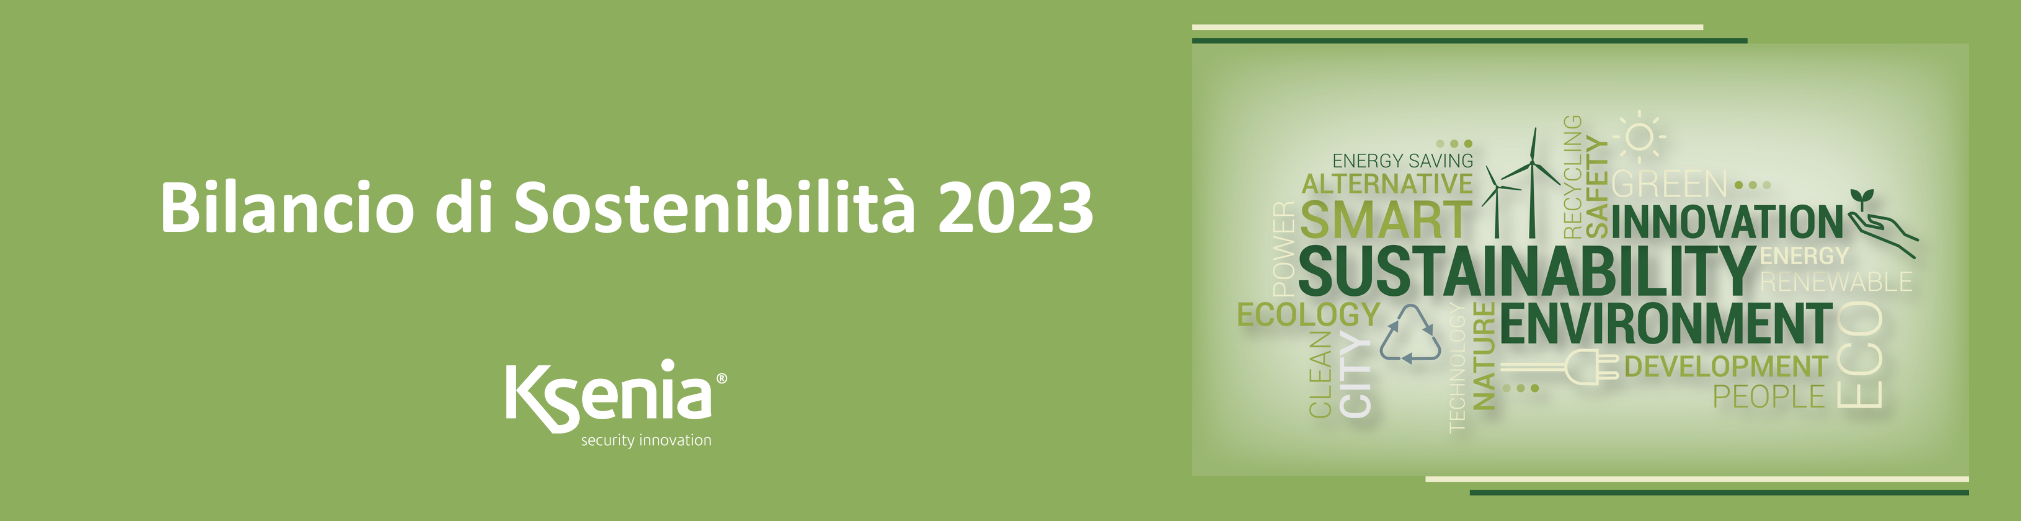 Nachhaltigkeitsbericht 2023